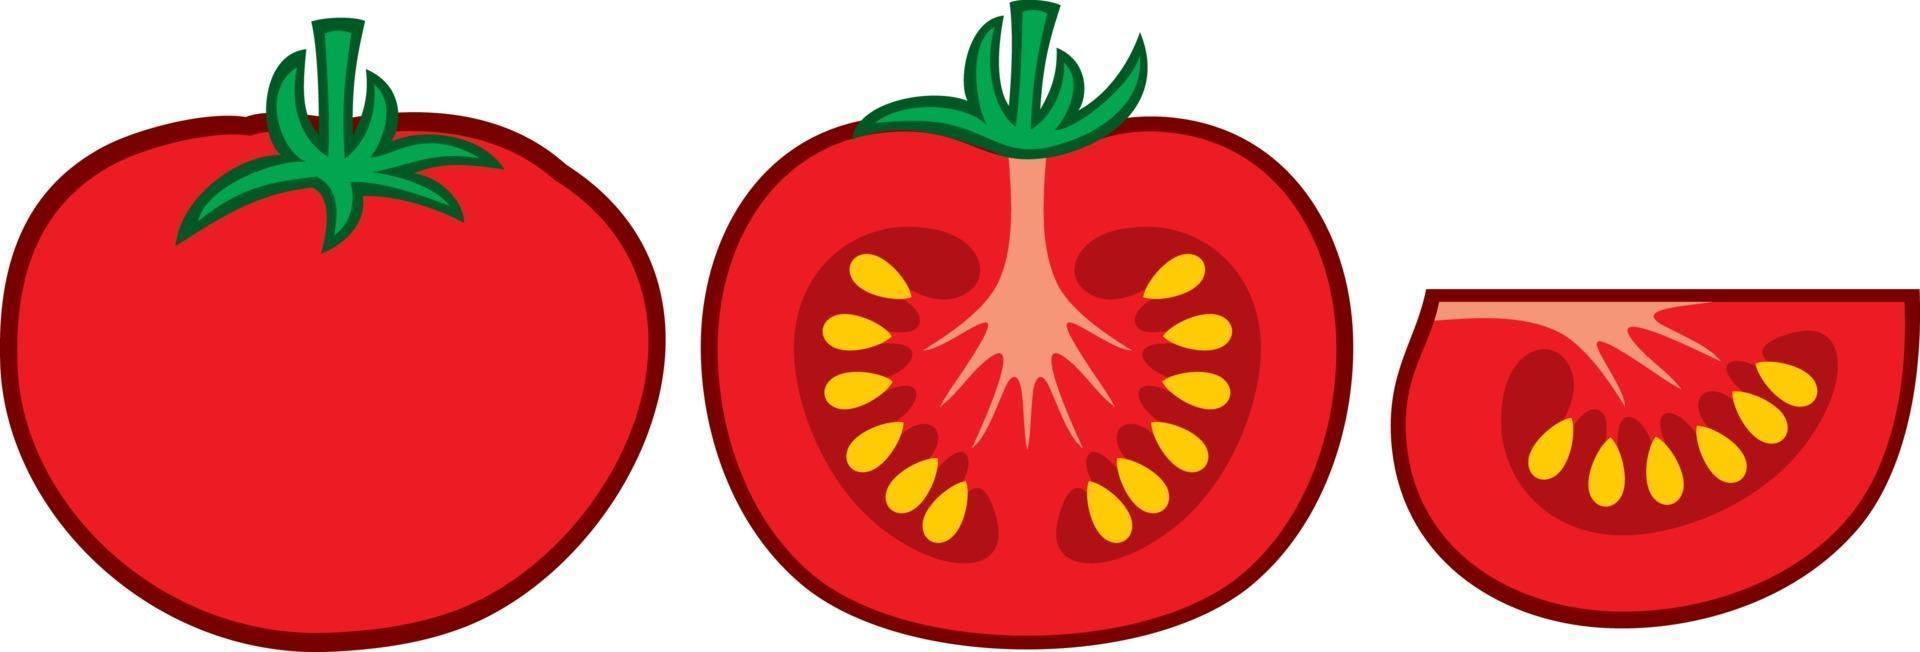 Tomatensegment und eine Scheibe vektor